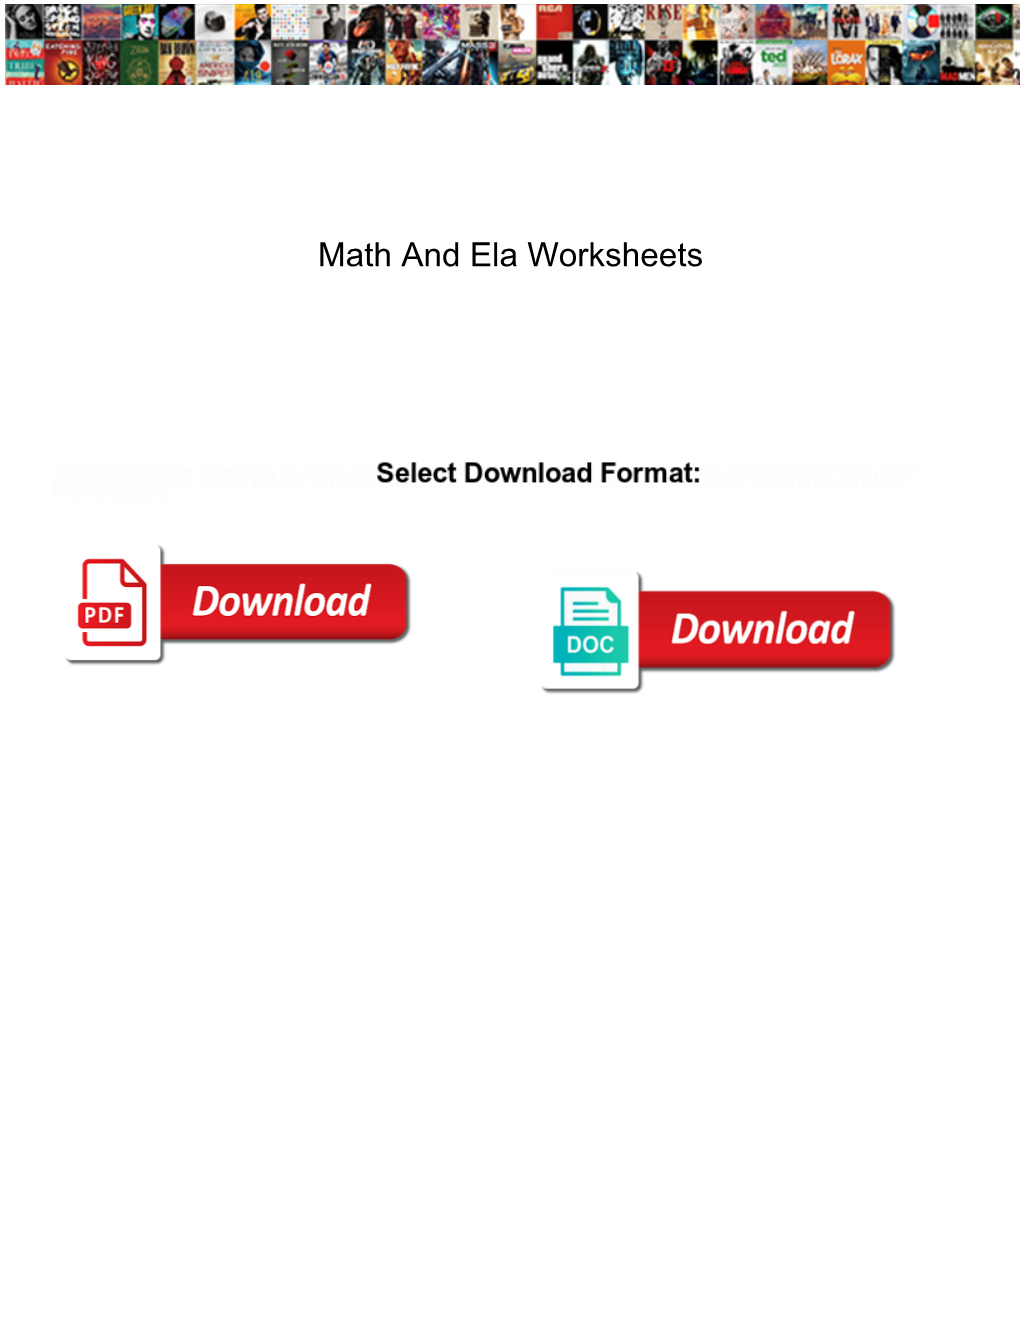 Math and Ela Worksheets